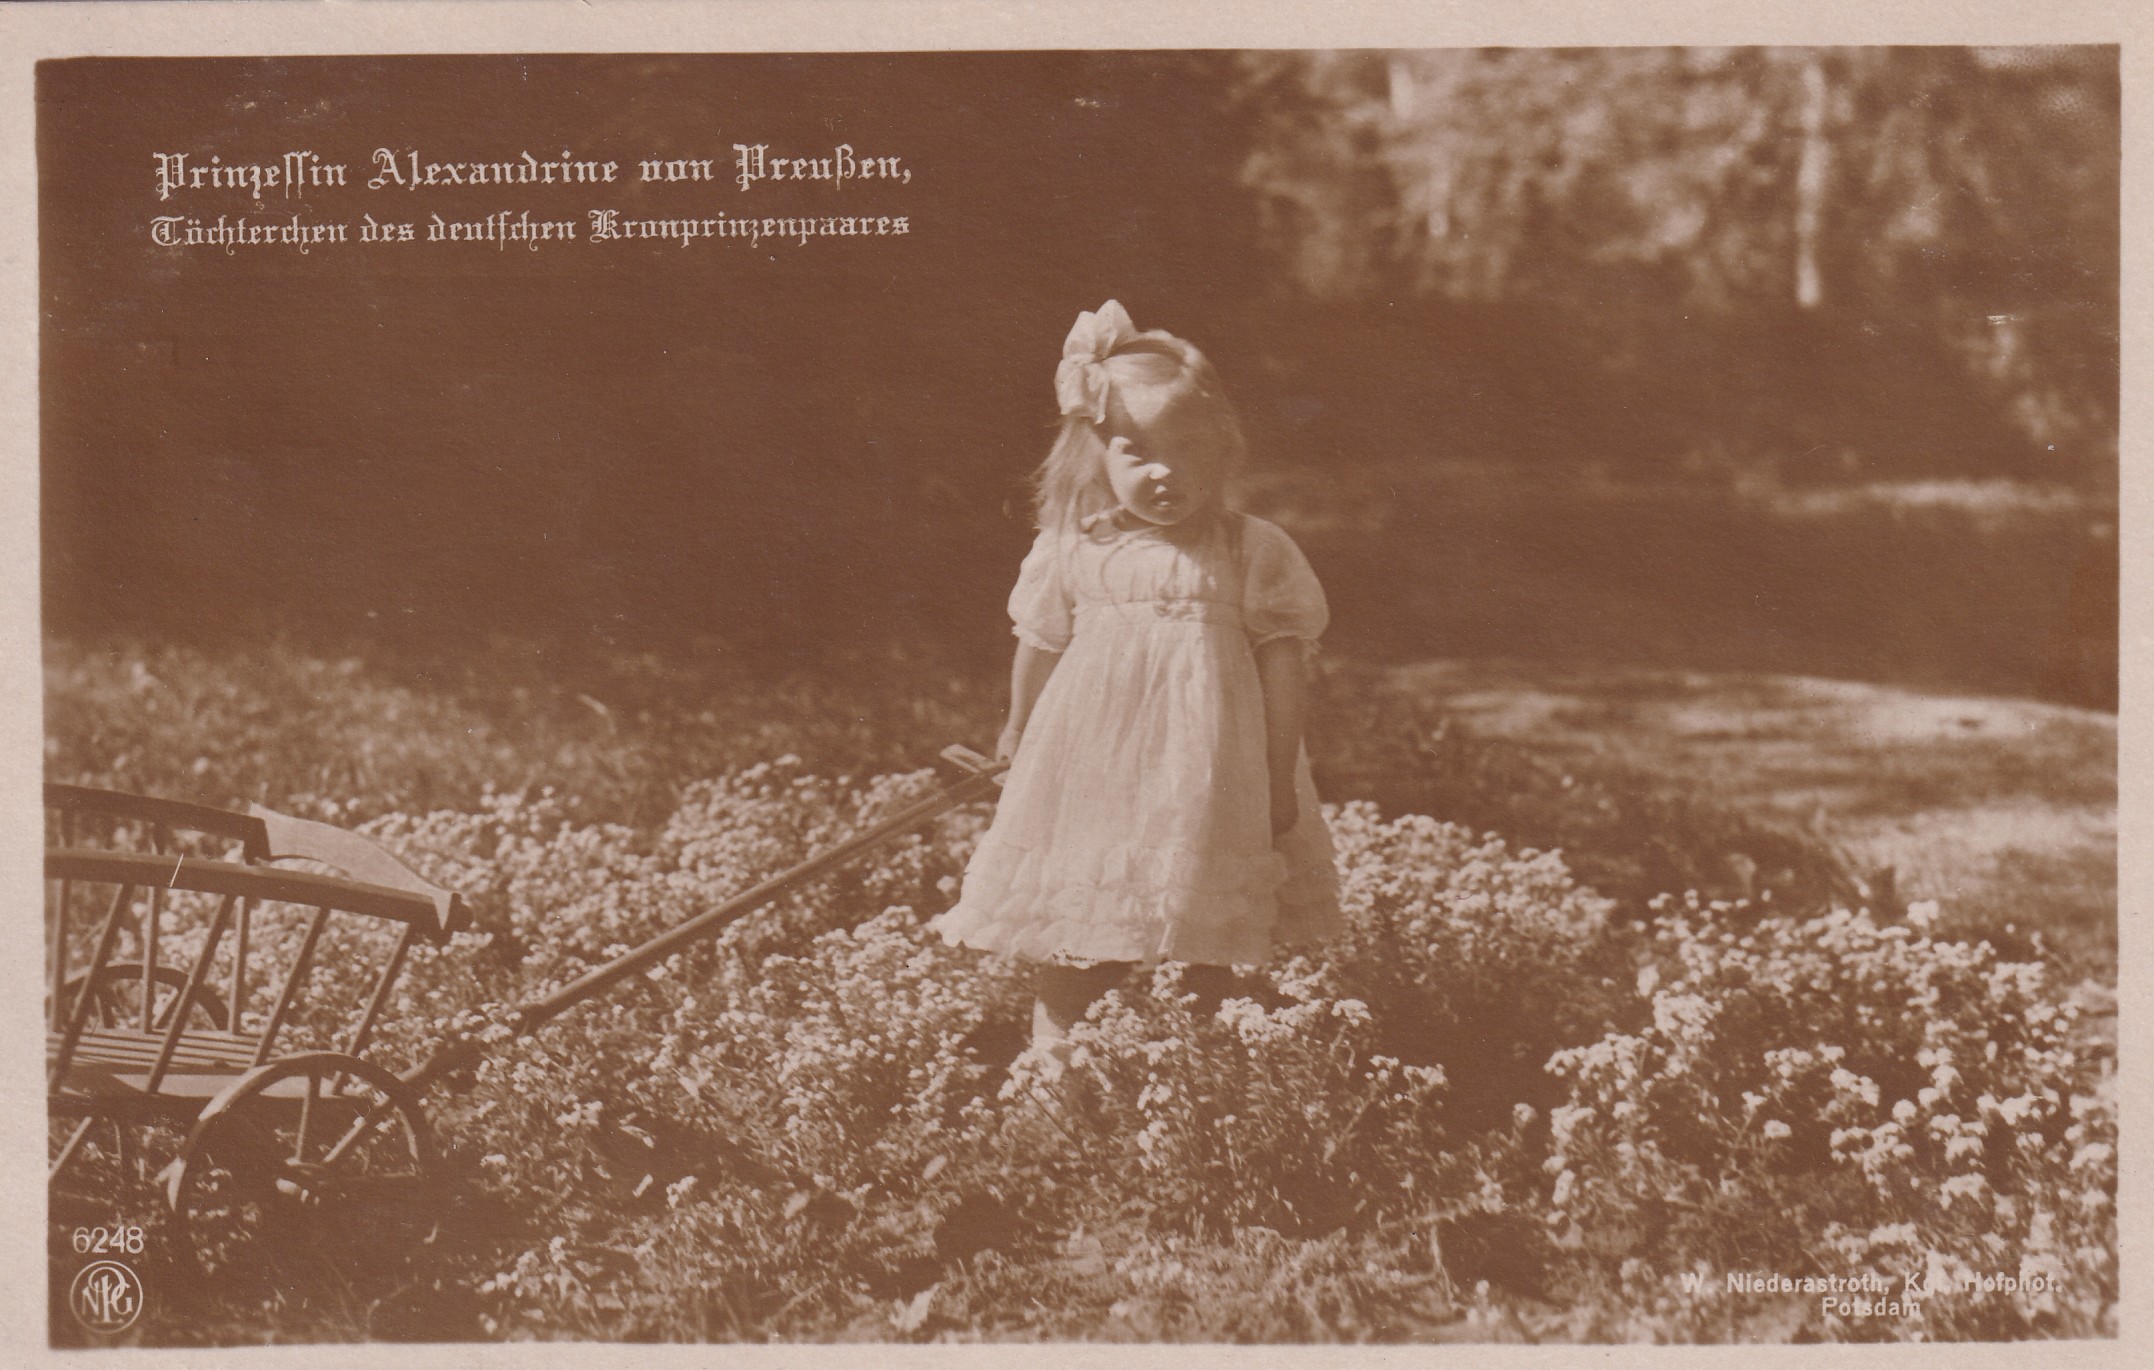 Bildpostkarte mit Foto der Prinzessin Alexandrine von Preußen (1915-1980) mit Leiterwagen im Garten, 1917. (Schloß Wernigerode GmbH RR-F)